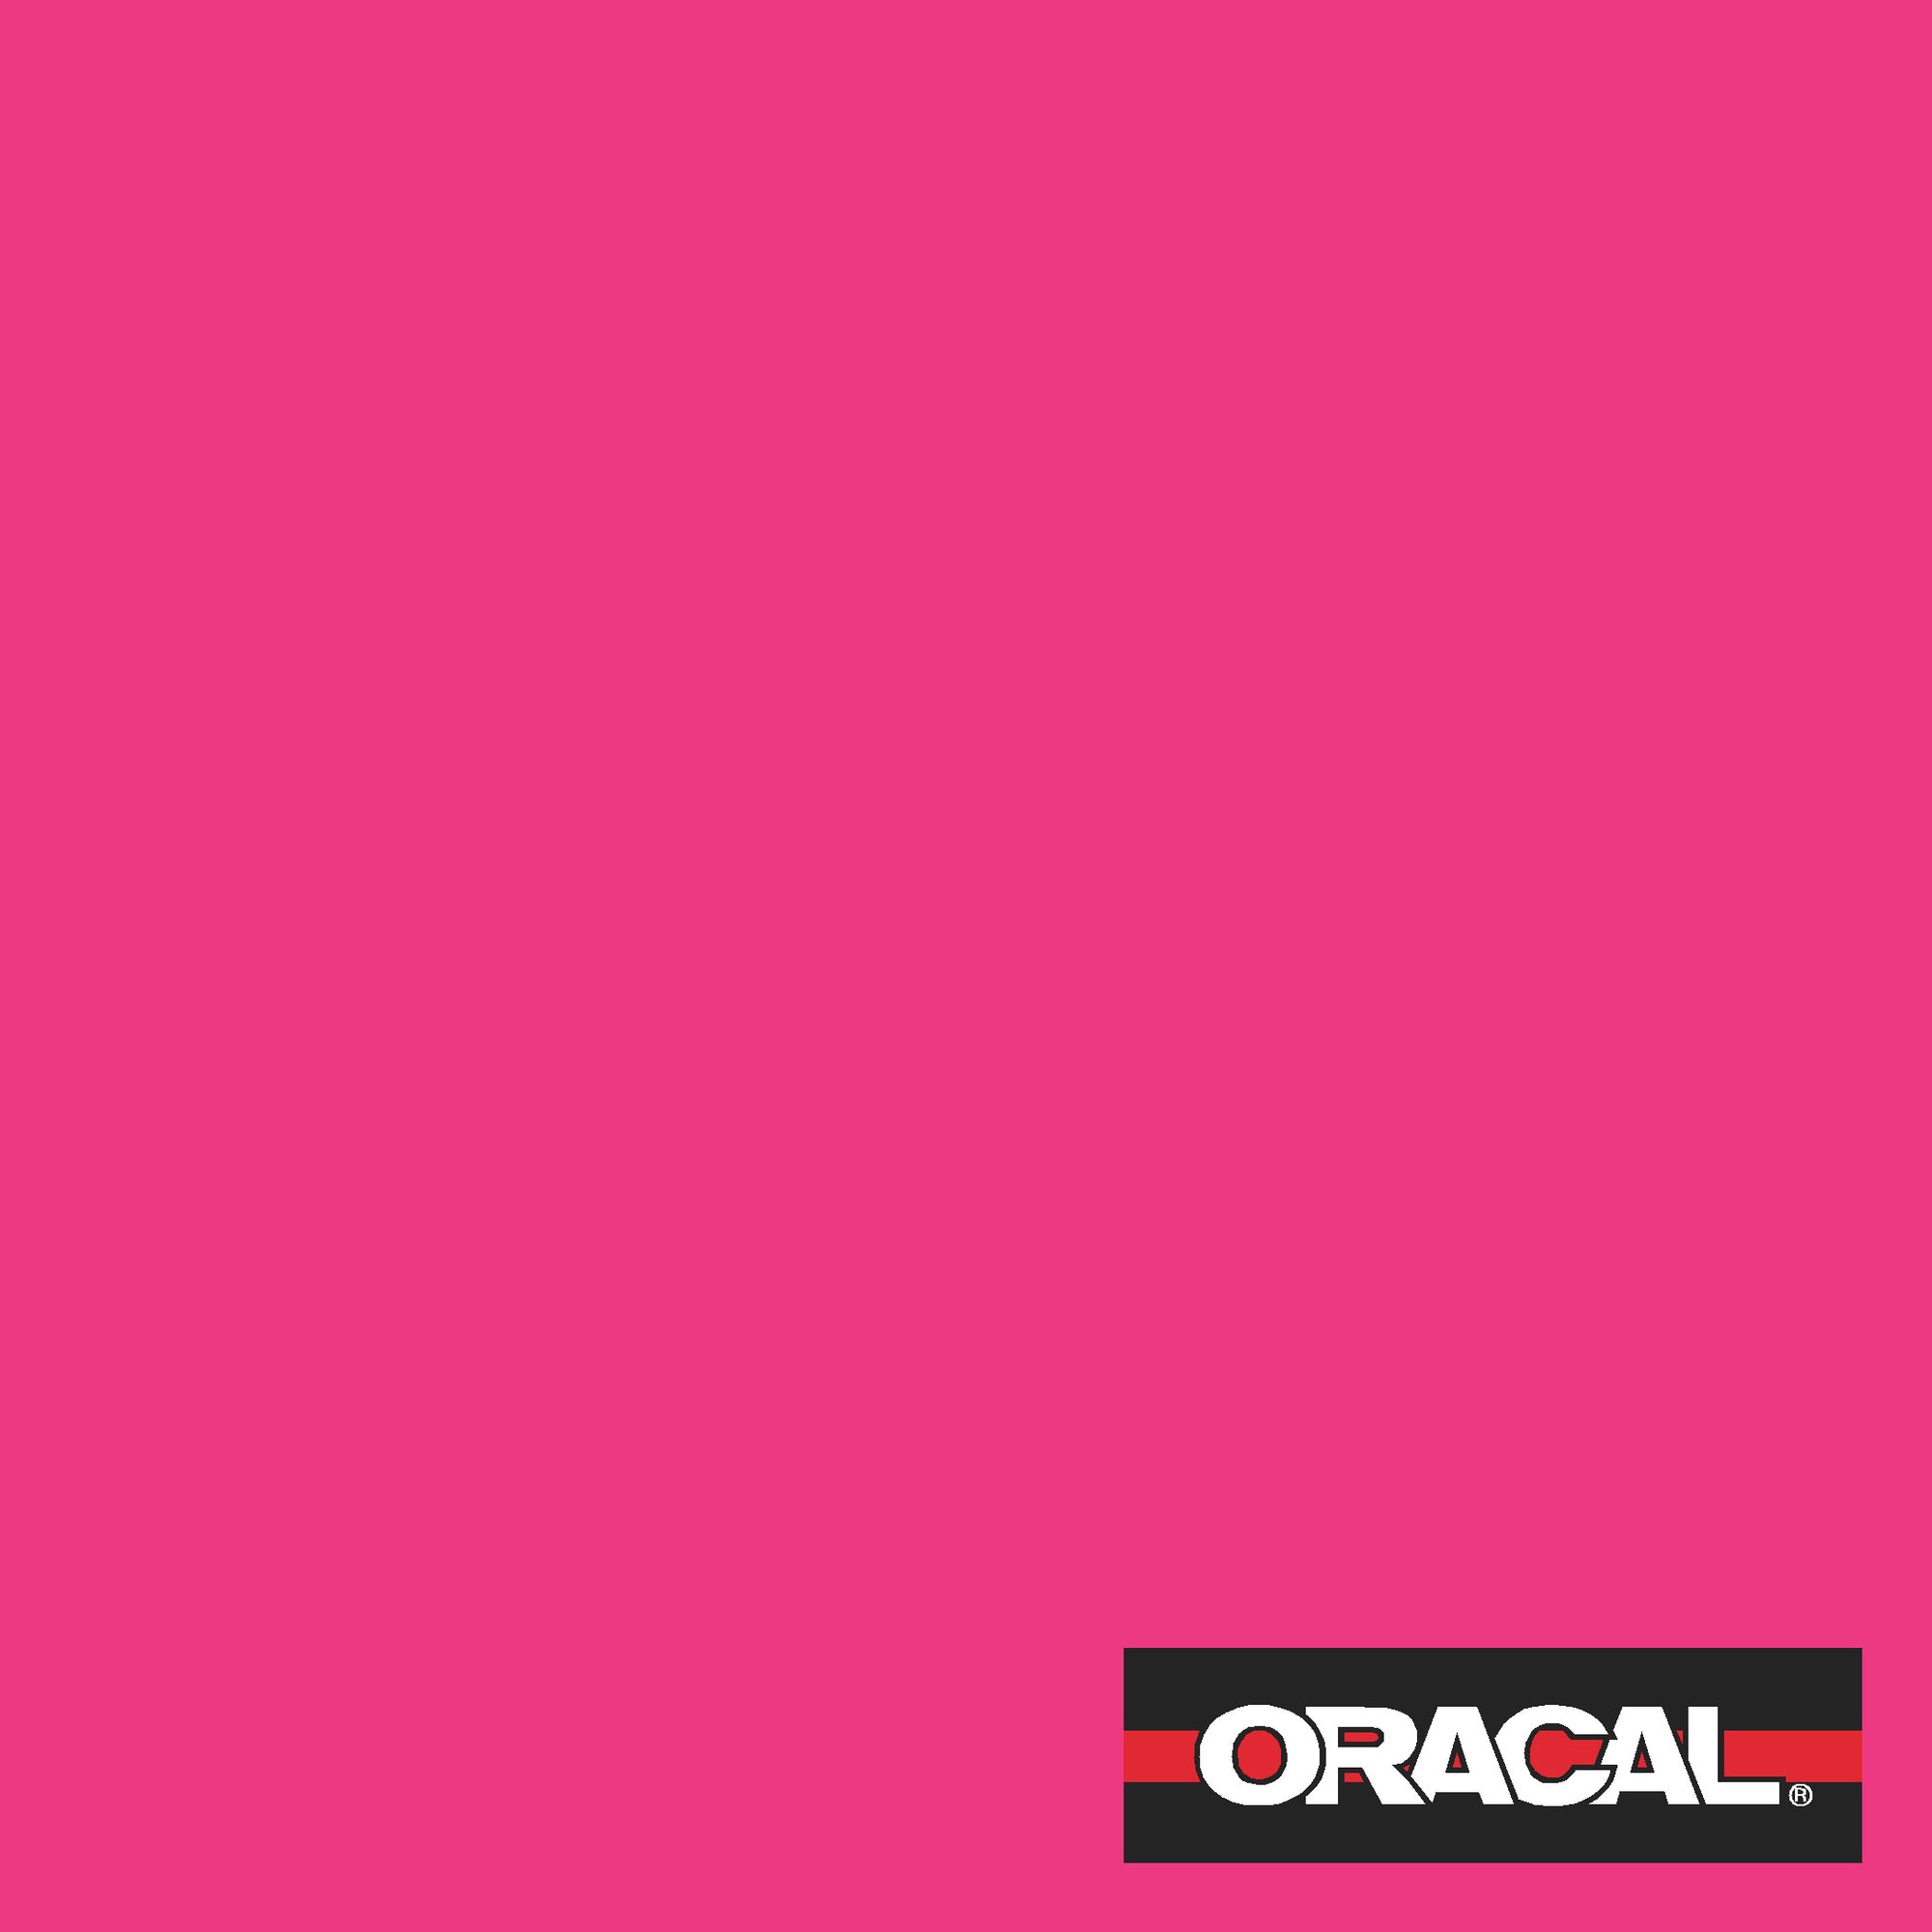 wide Oracal 651 Magenta 041 Pink vinyl